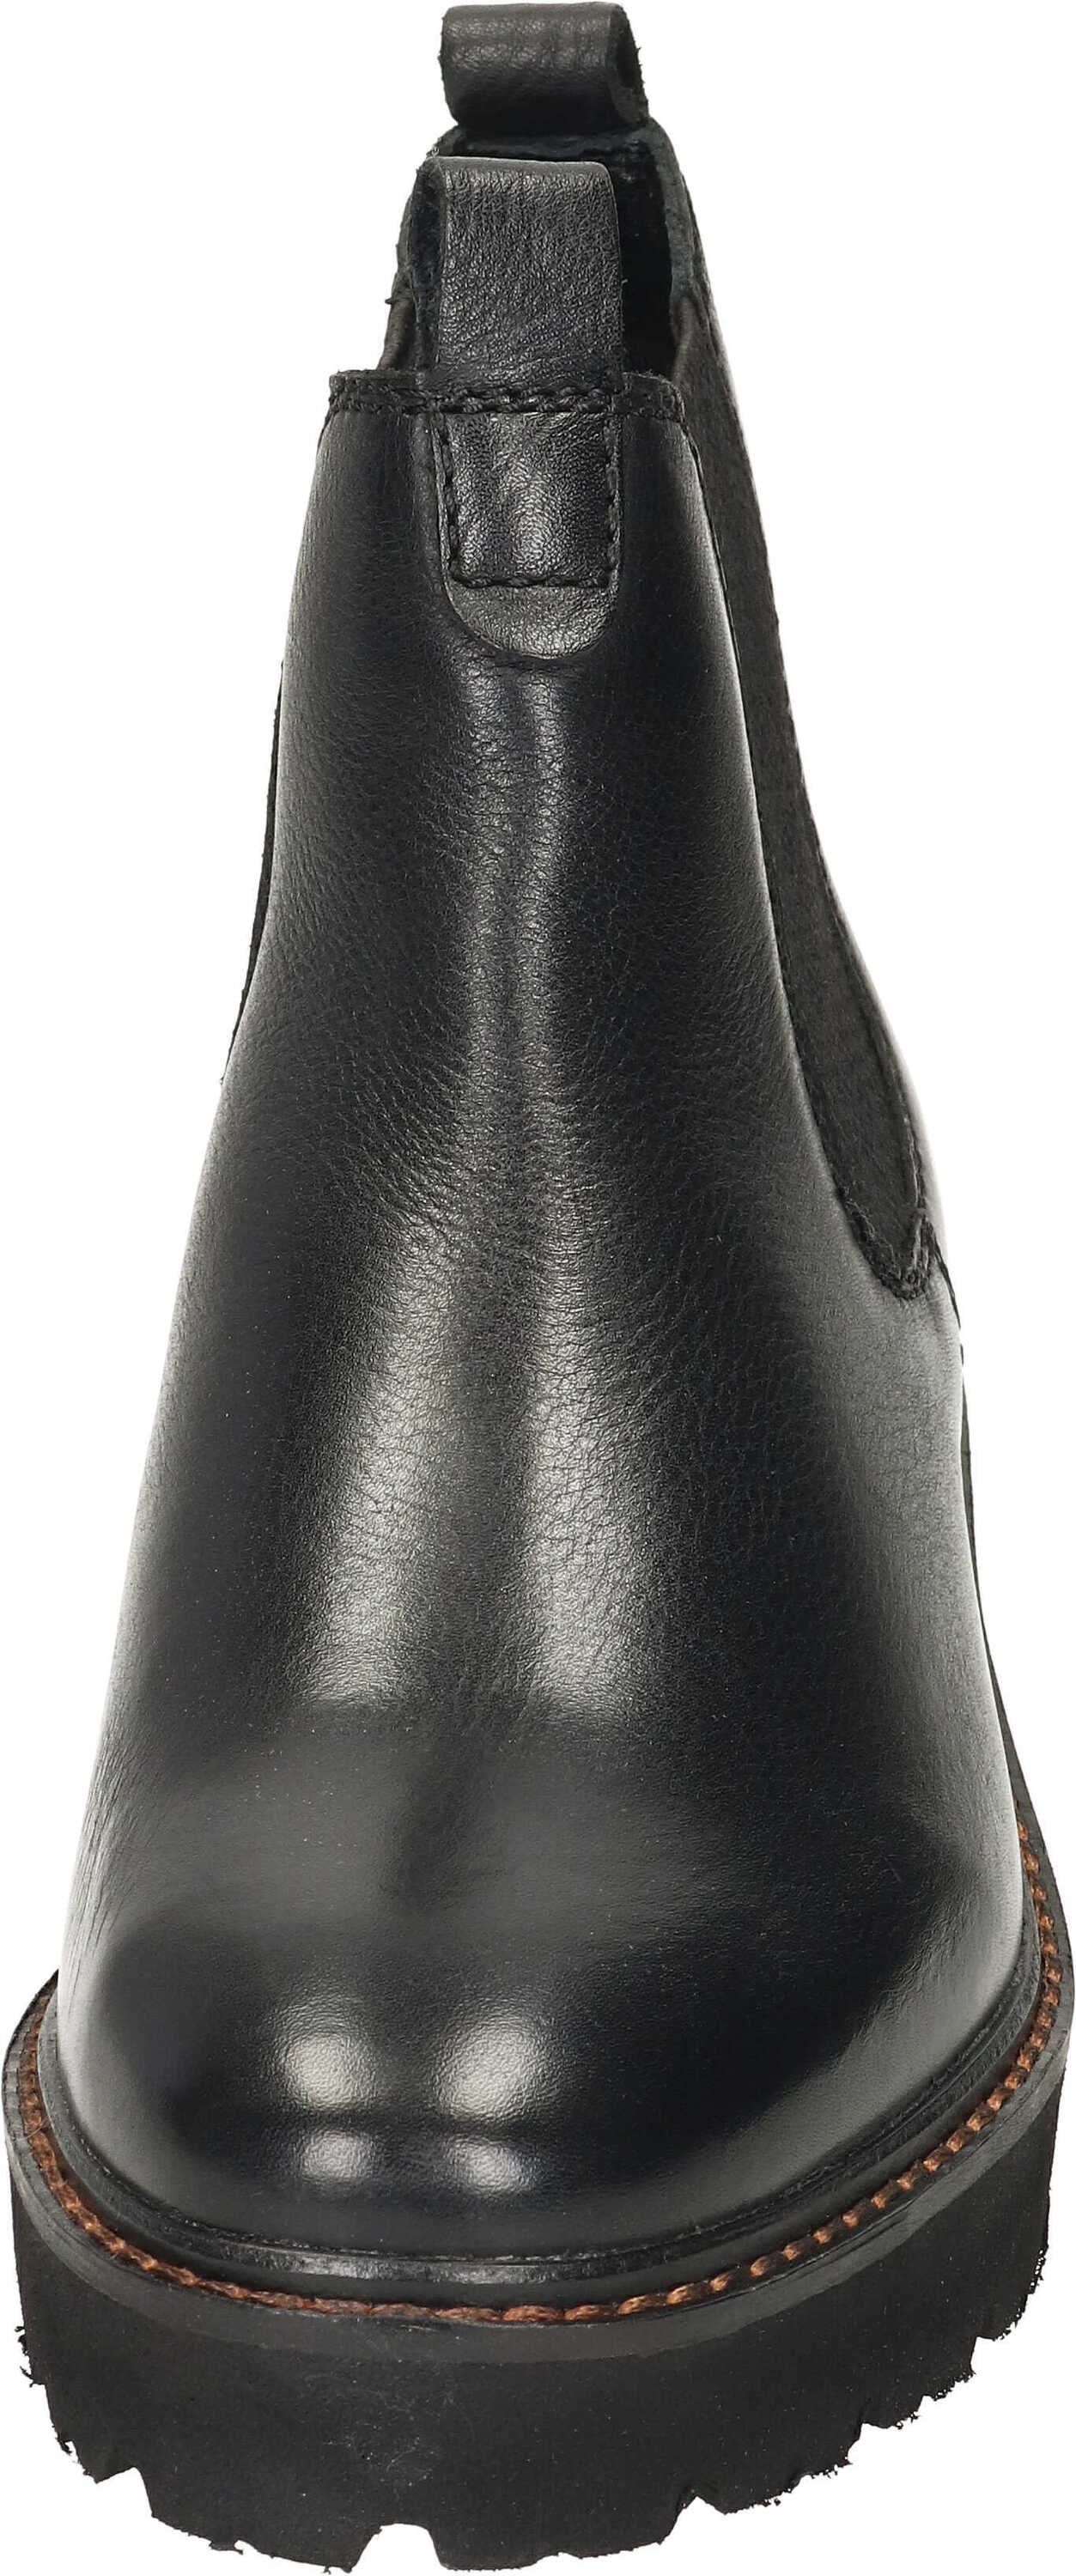 schwarz Ara echtem Stiefeletten Stiefelette aus Leder